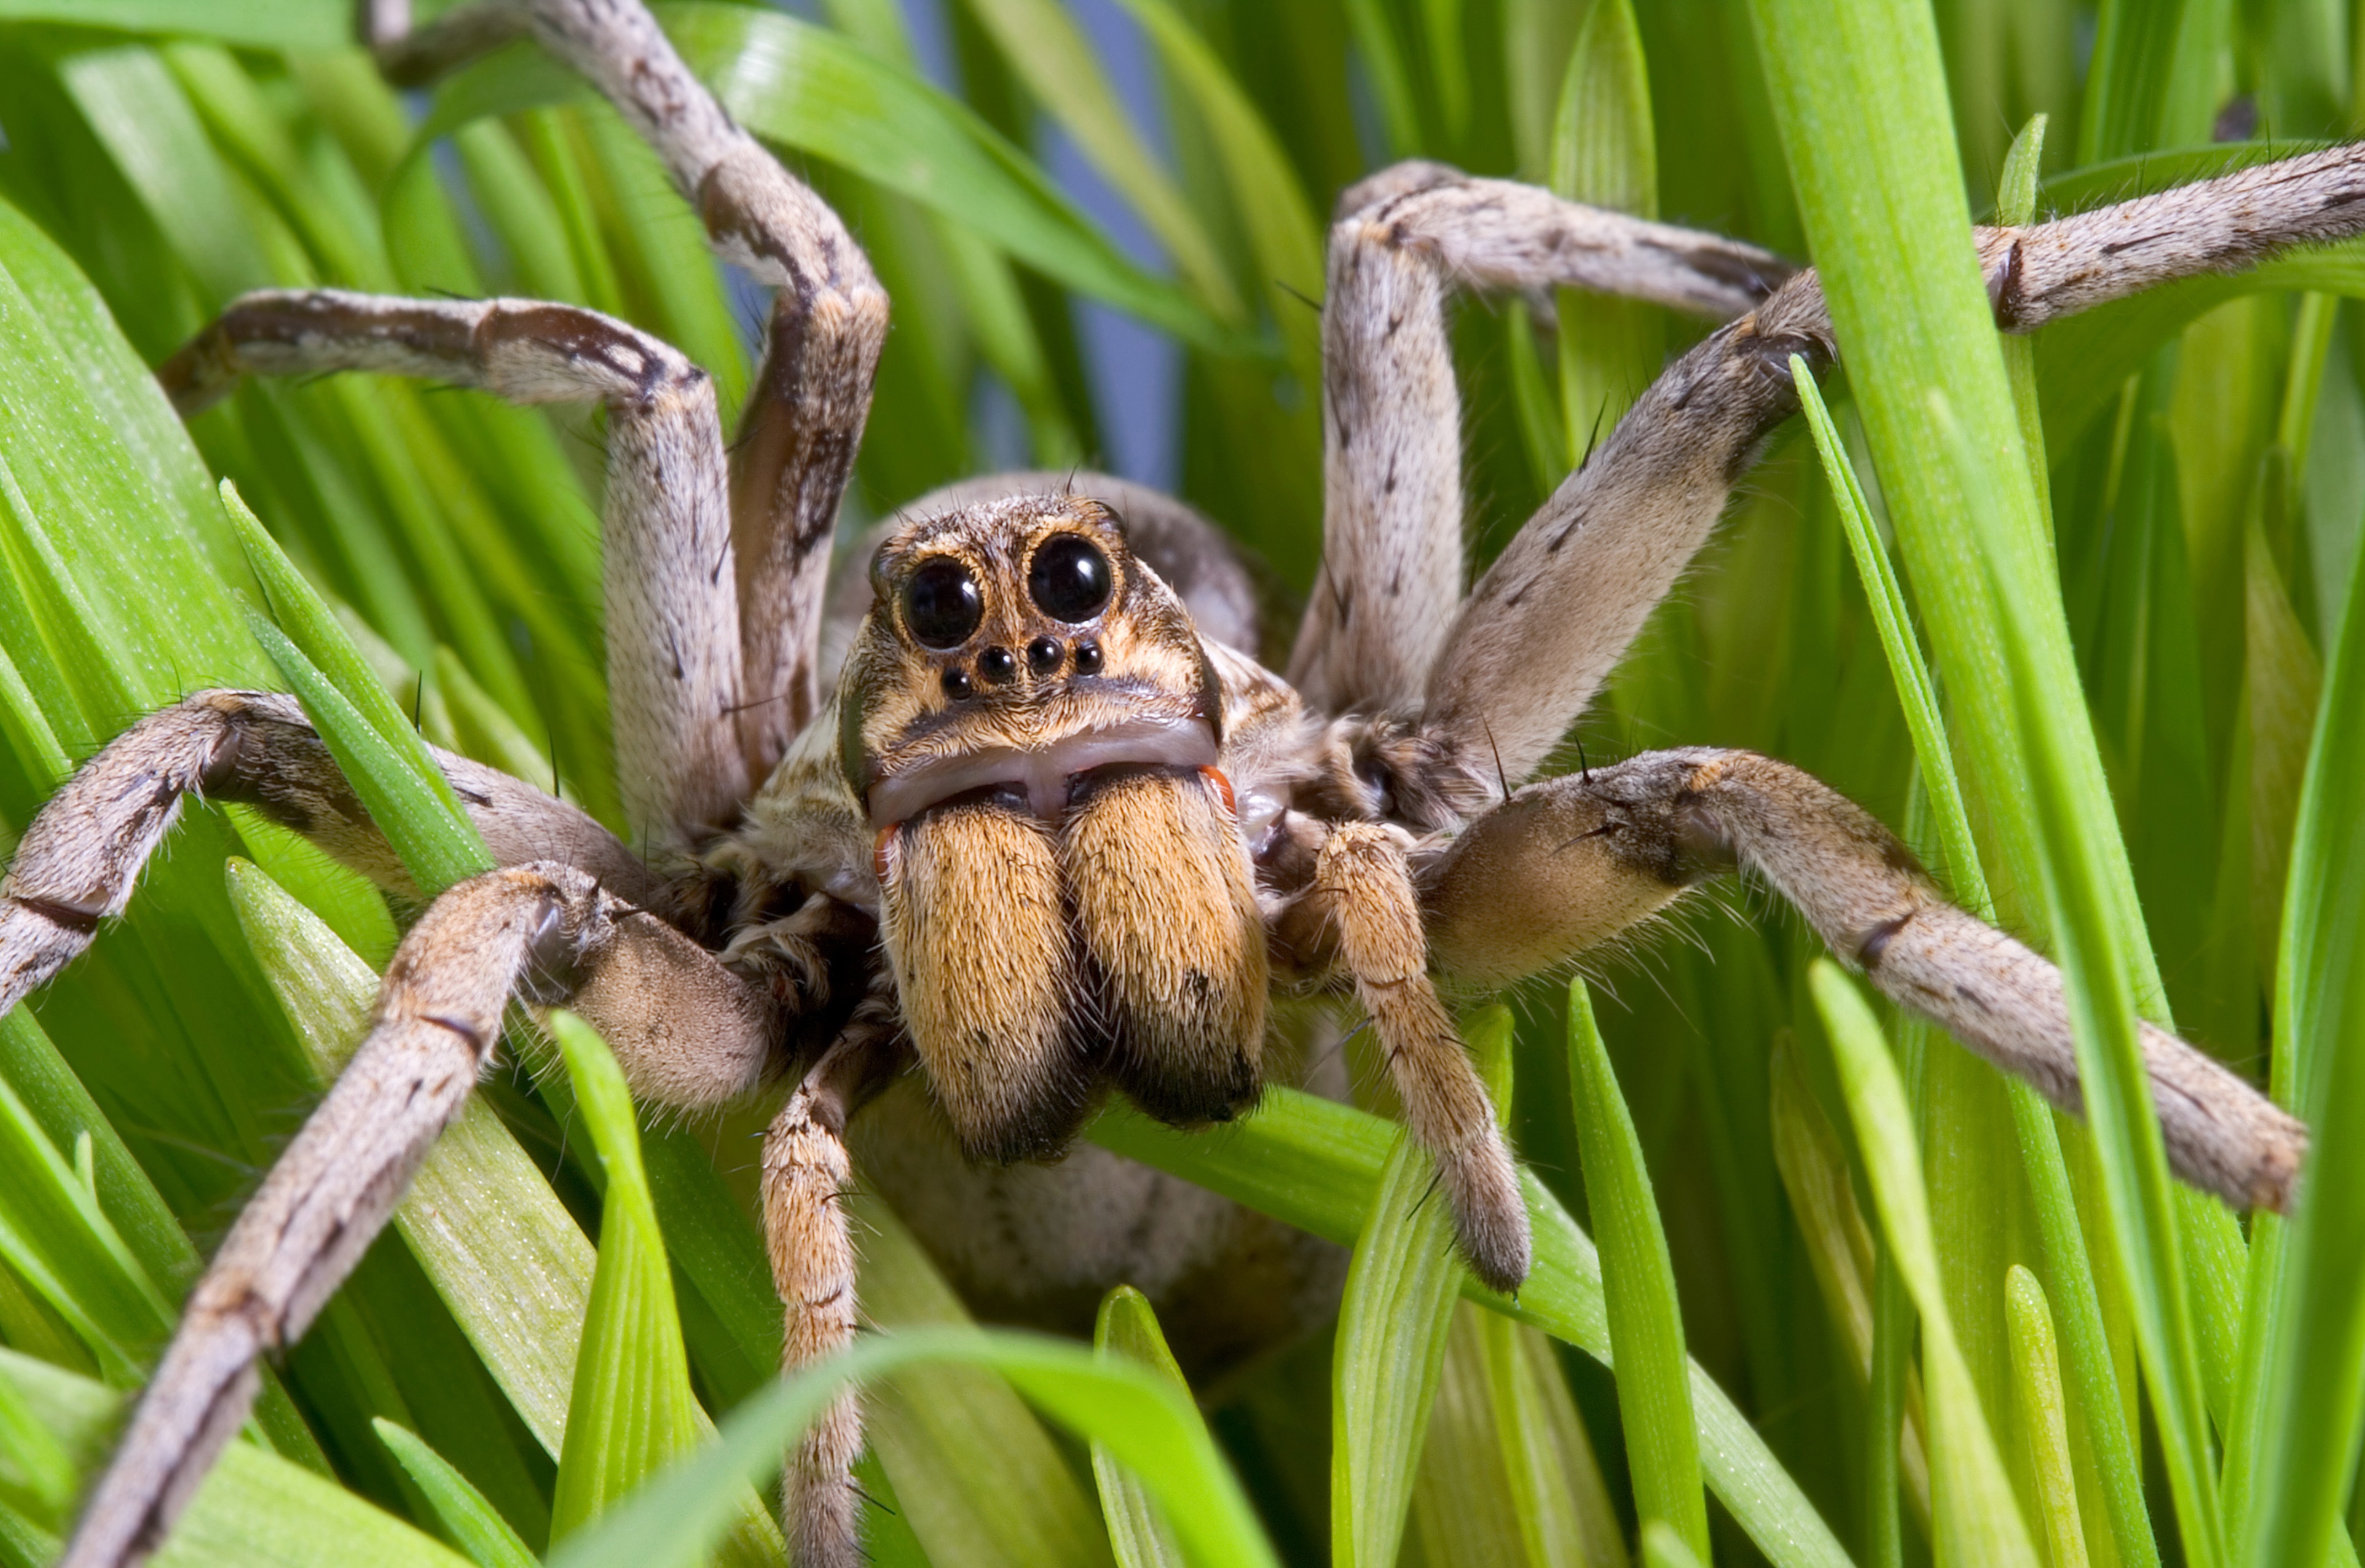 World's widest web? Flood-hit spiders find higher ground, Spiders